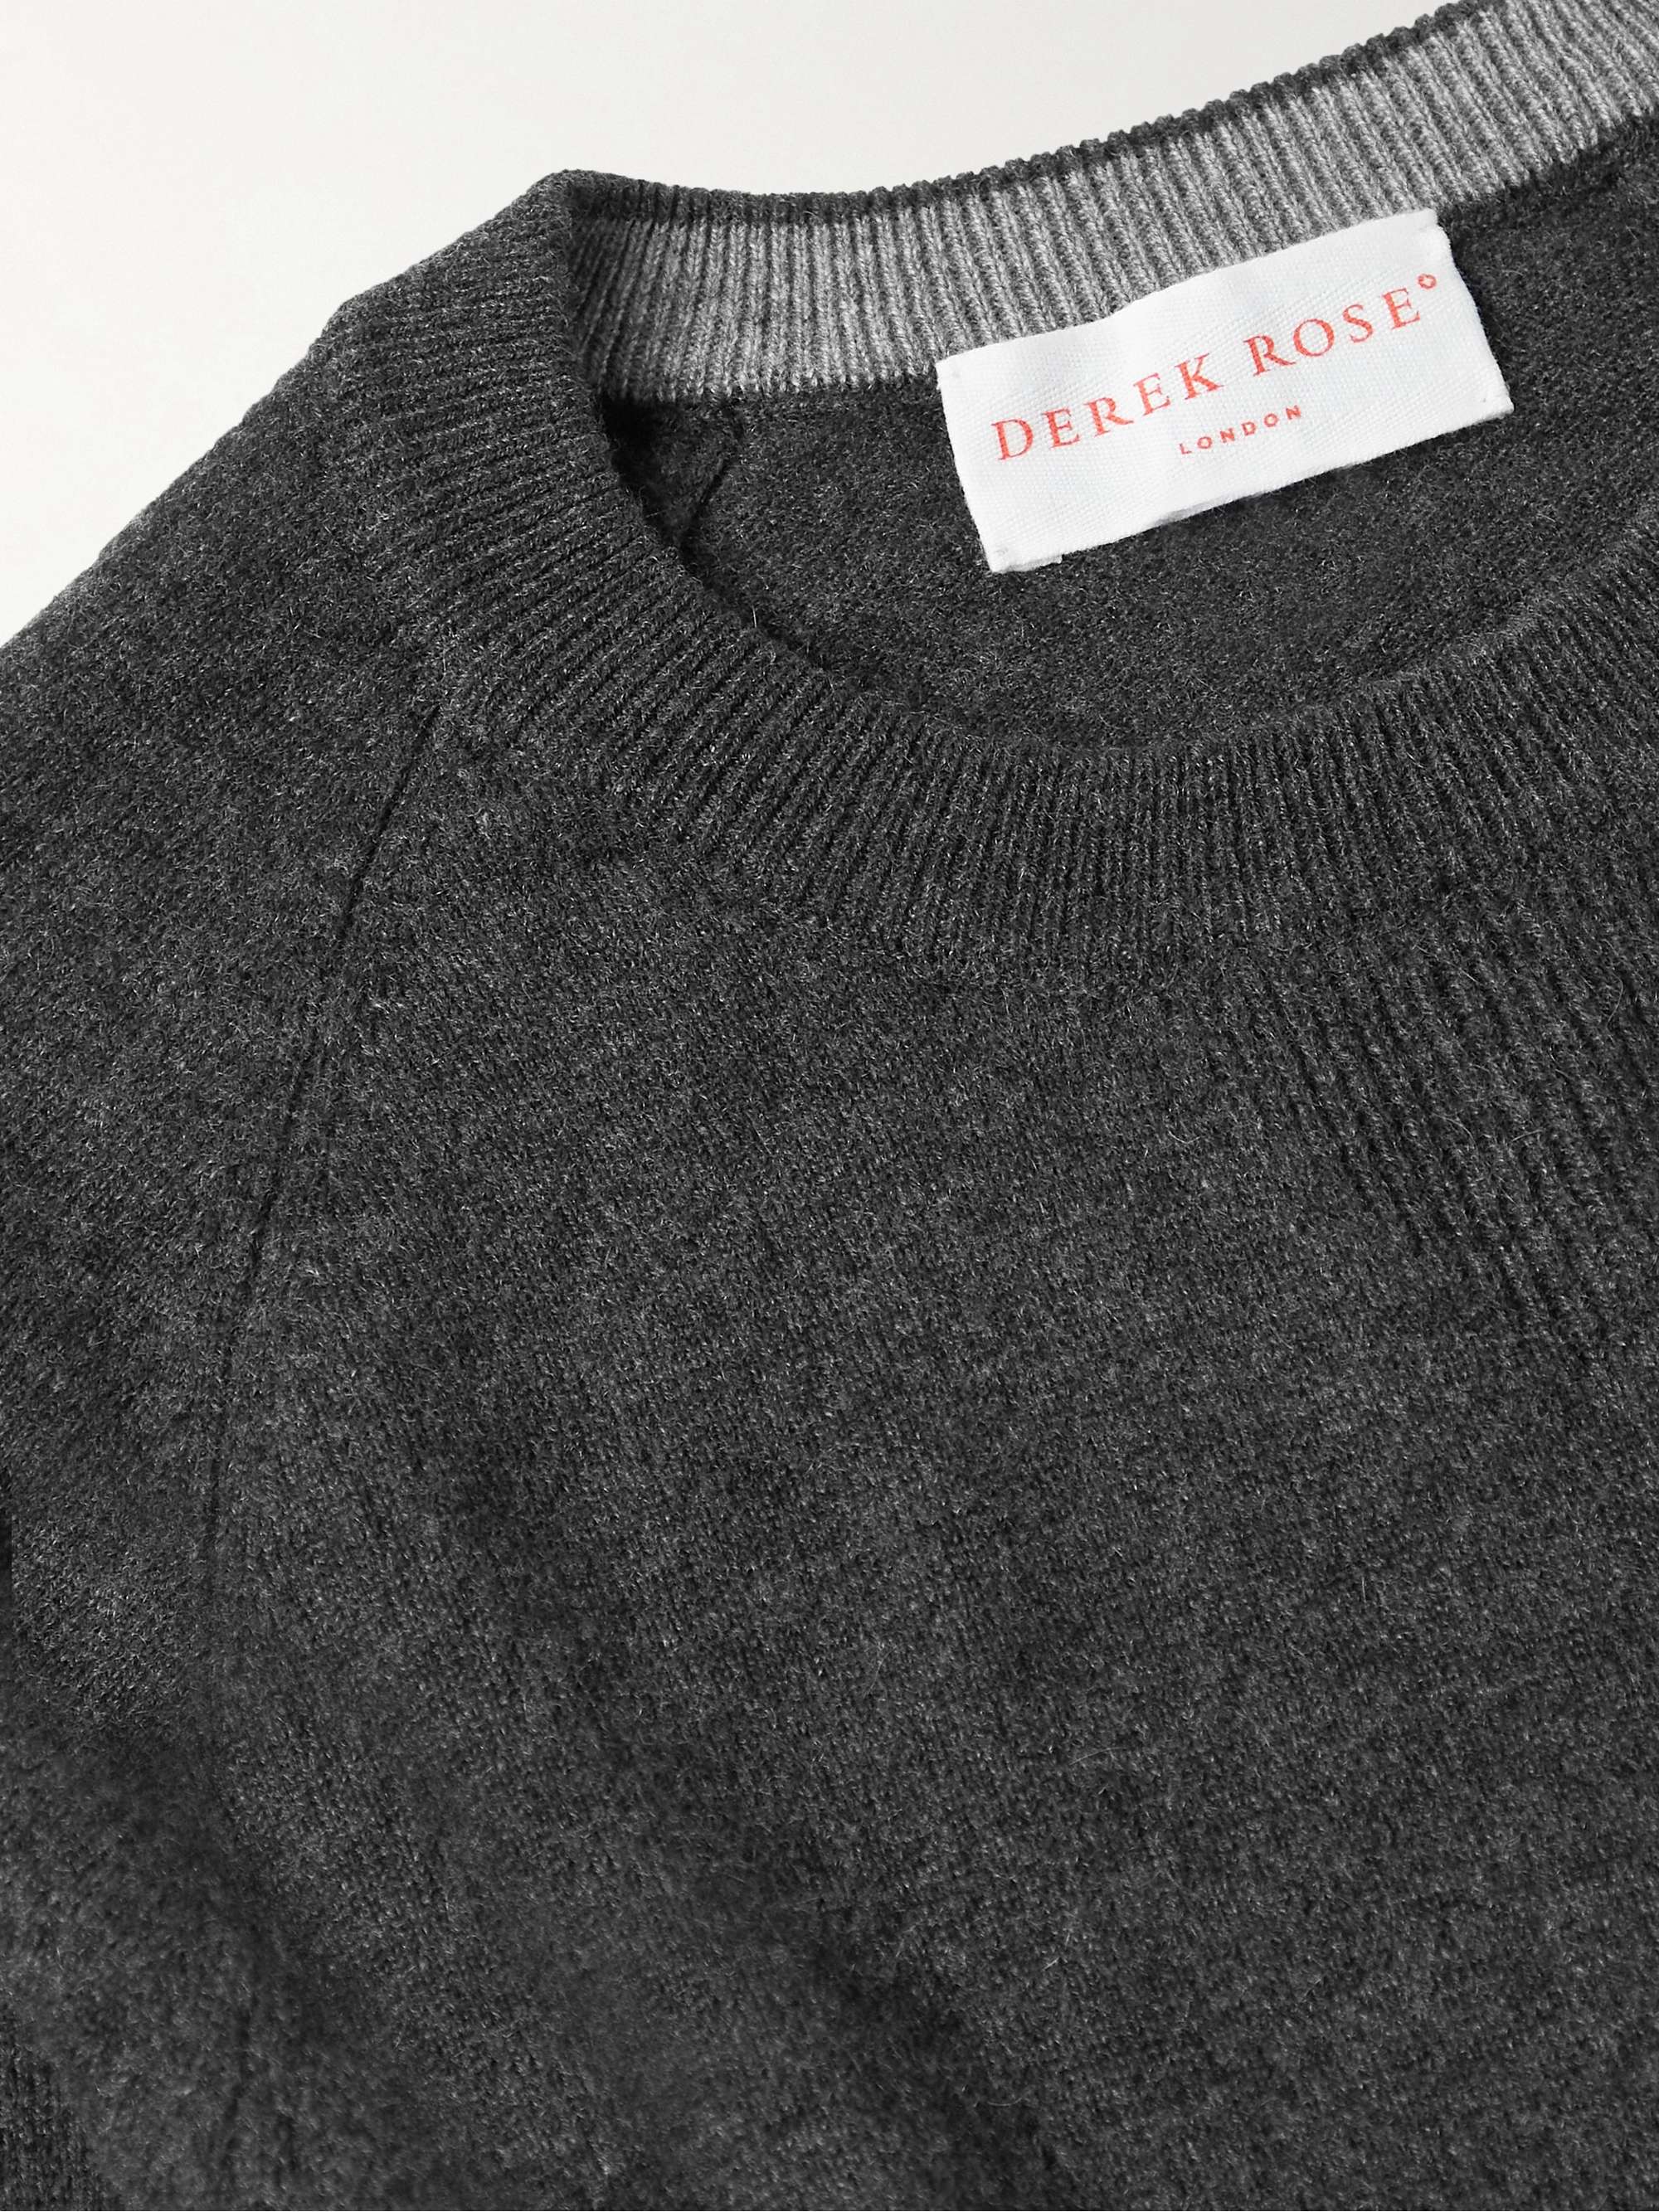 DEREK ROSE Finley 2 Cashmere Sweater